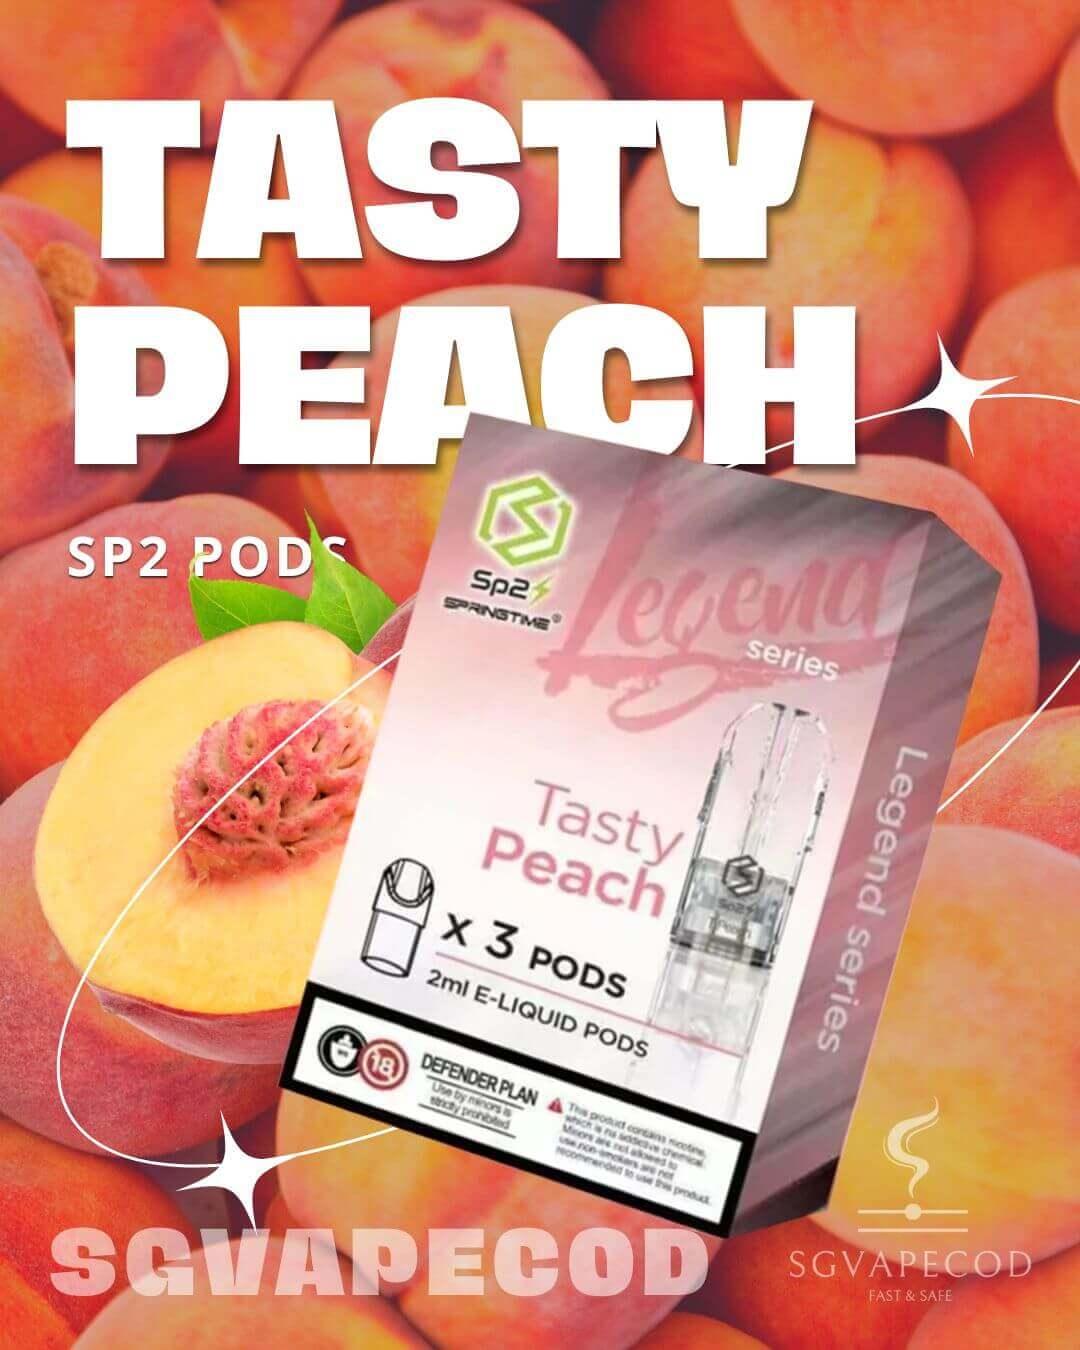 Sp2-Pod-Tasty-Peach-(SG VAPE COD)